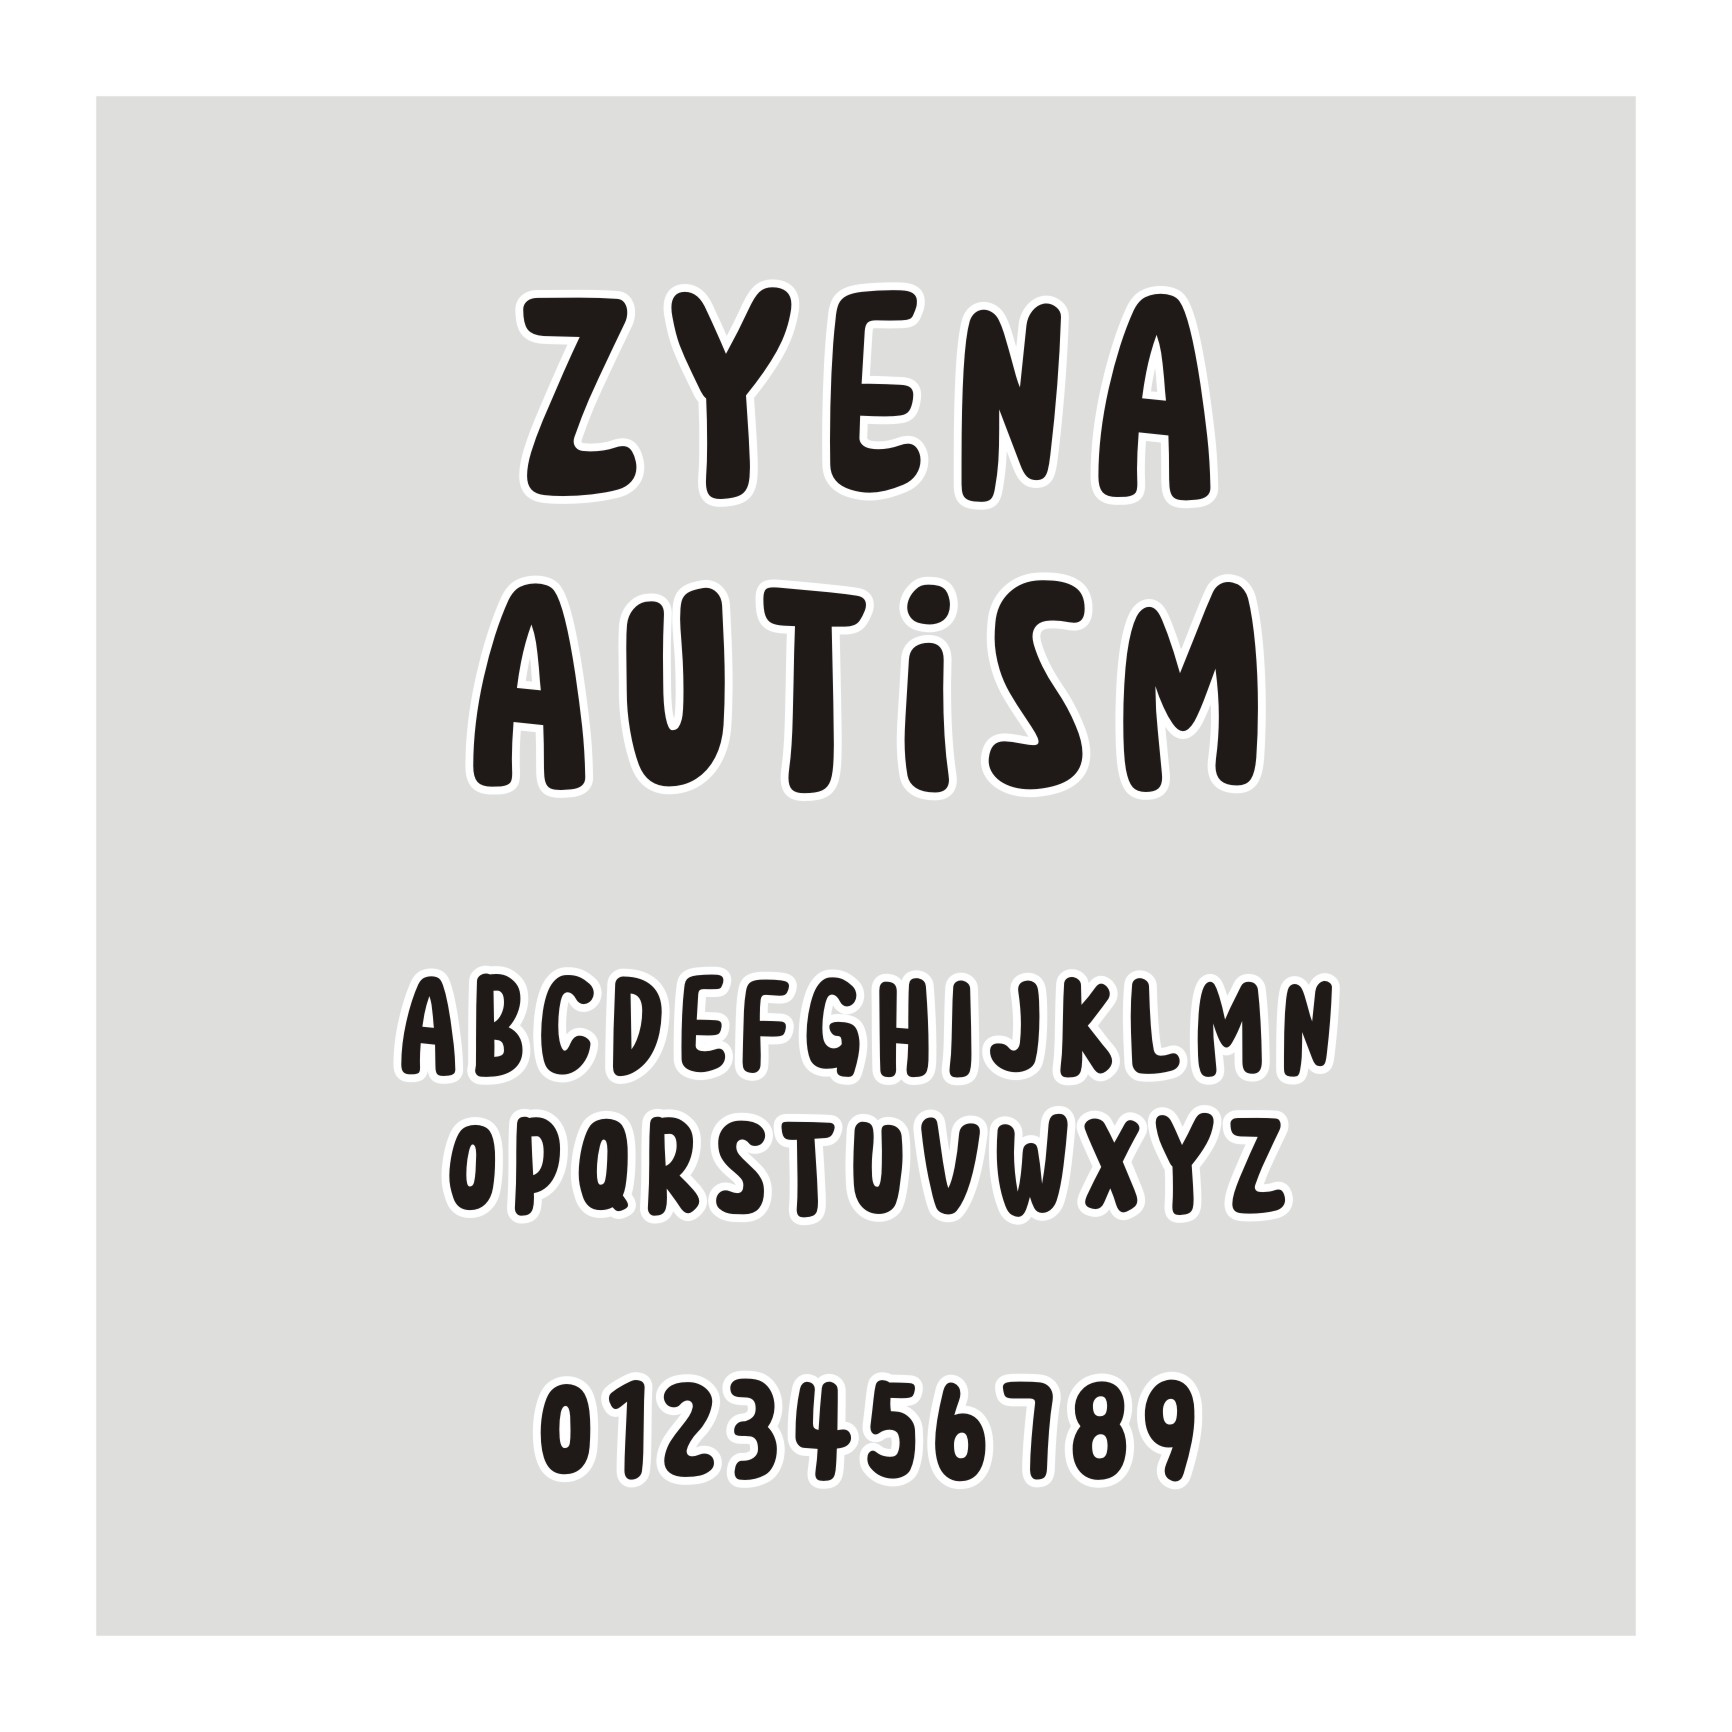 ZYENA Autism